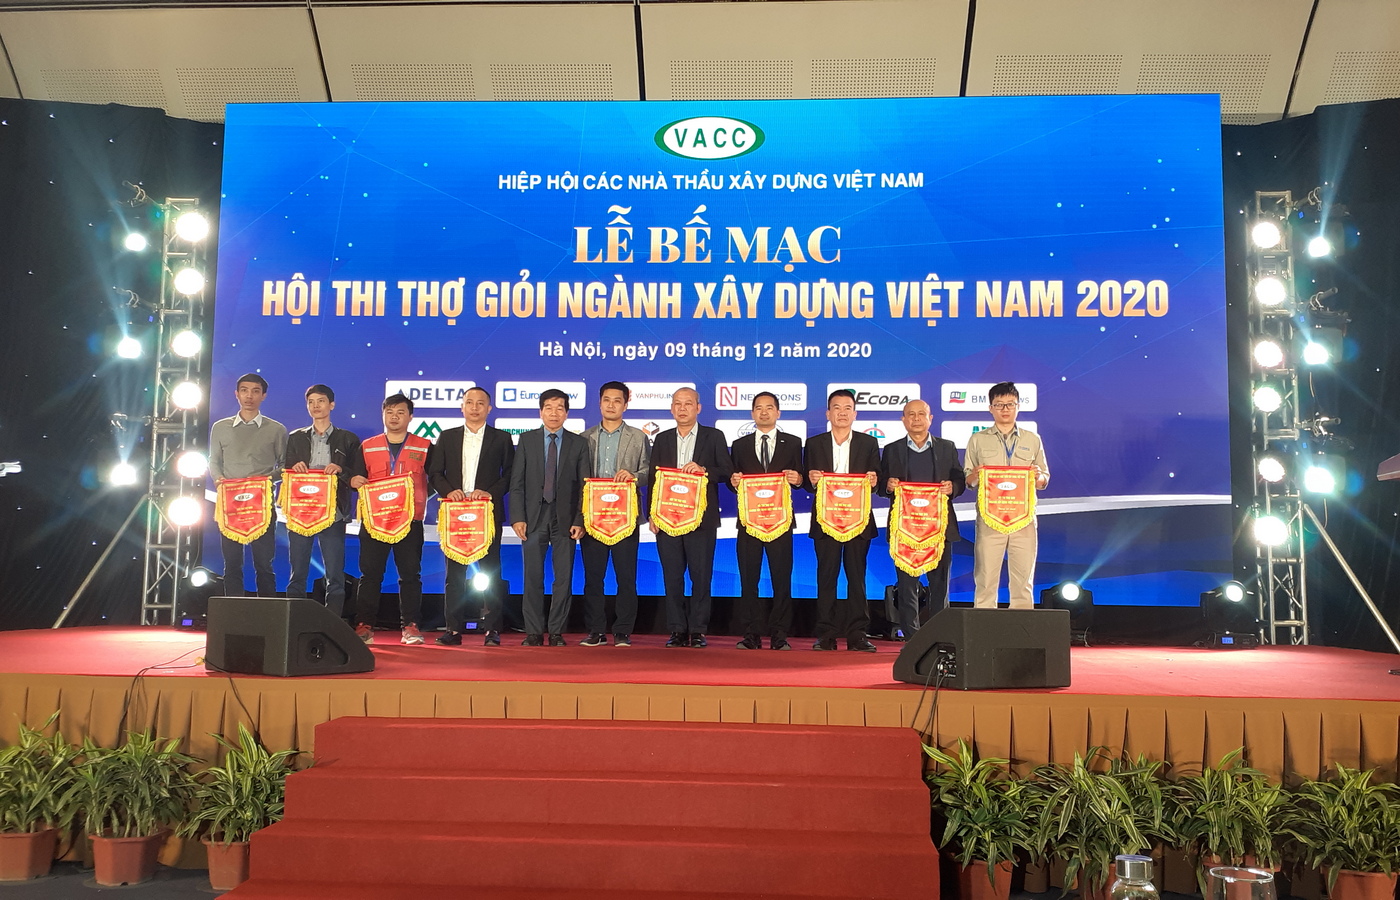 Hội thi thợ giỏi ngành Xây dựng Việt Nam năm 2020